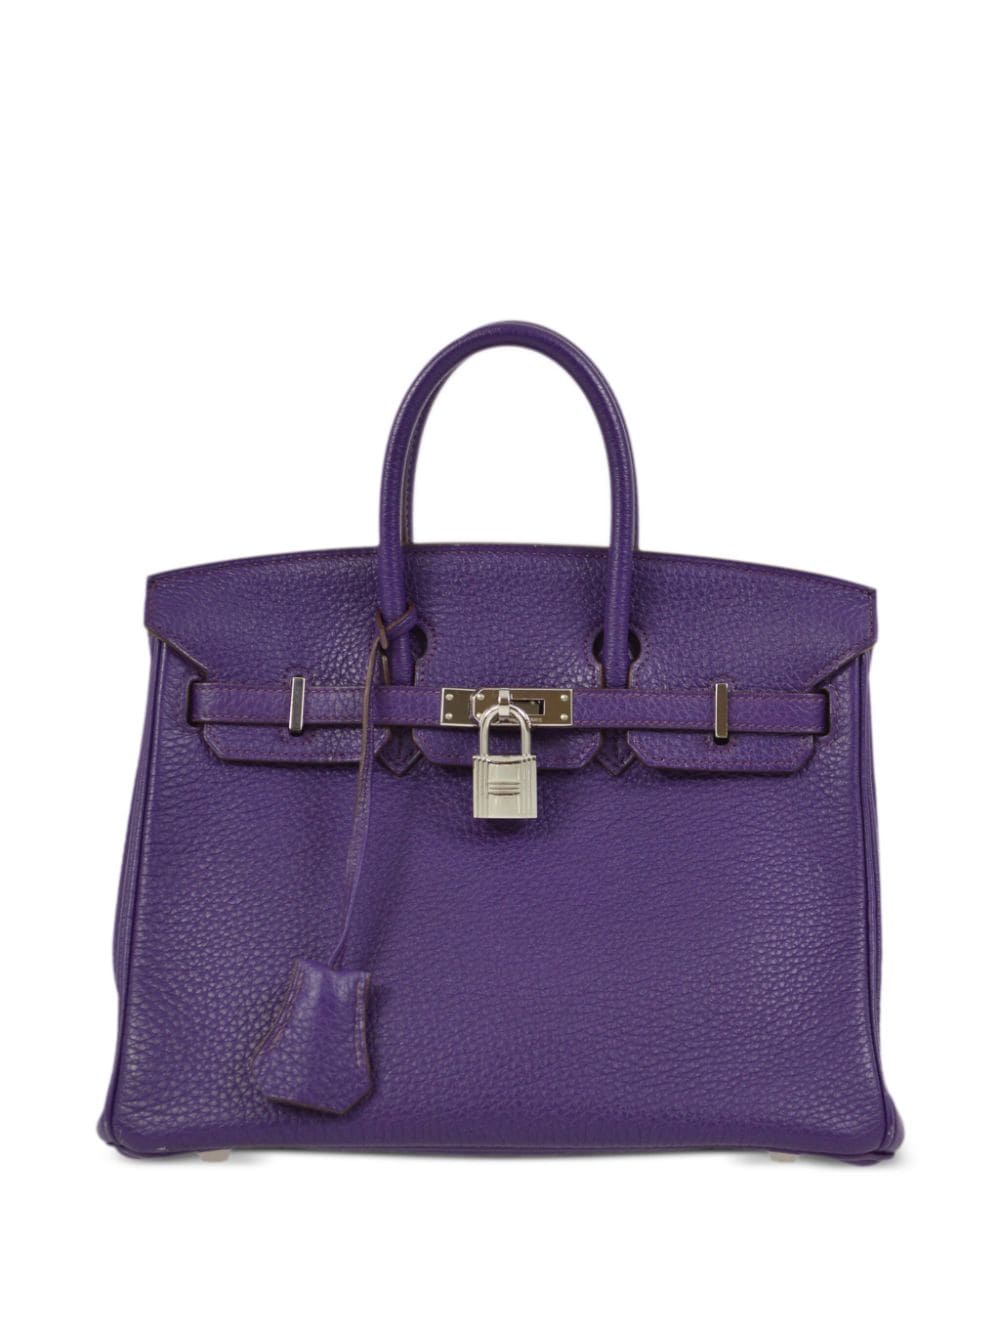 Pre-owned Hermes 2010 Birkin 25 Handbag In Purple